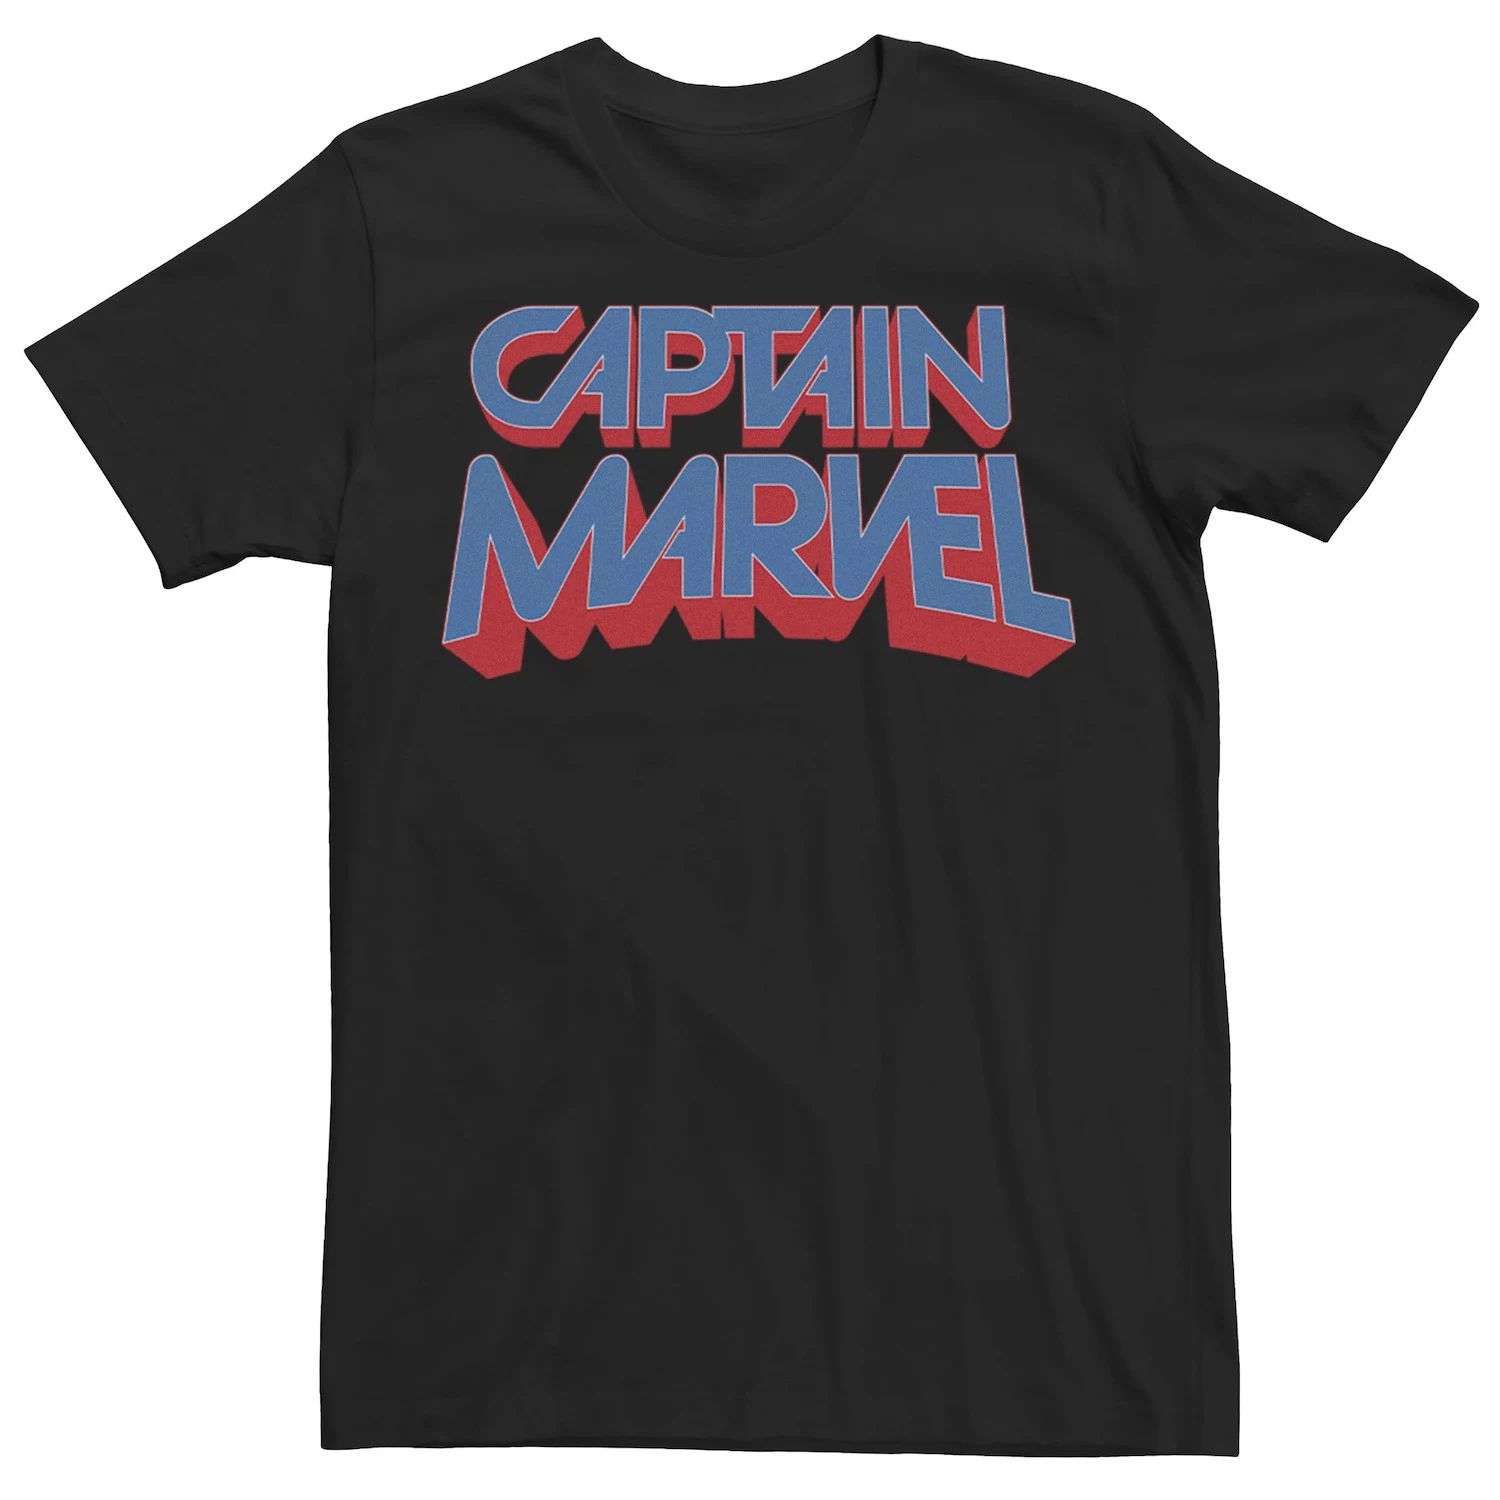 мужская классическая футболка с графическим логотипом marvel Мужская футболка с графическим логотипом Captain Movie Marvel